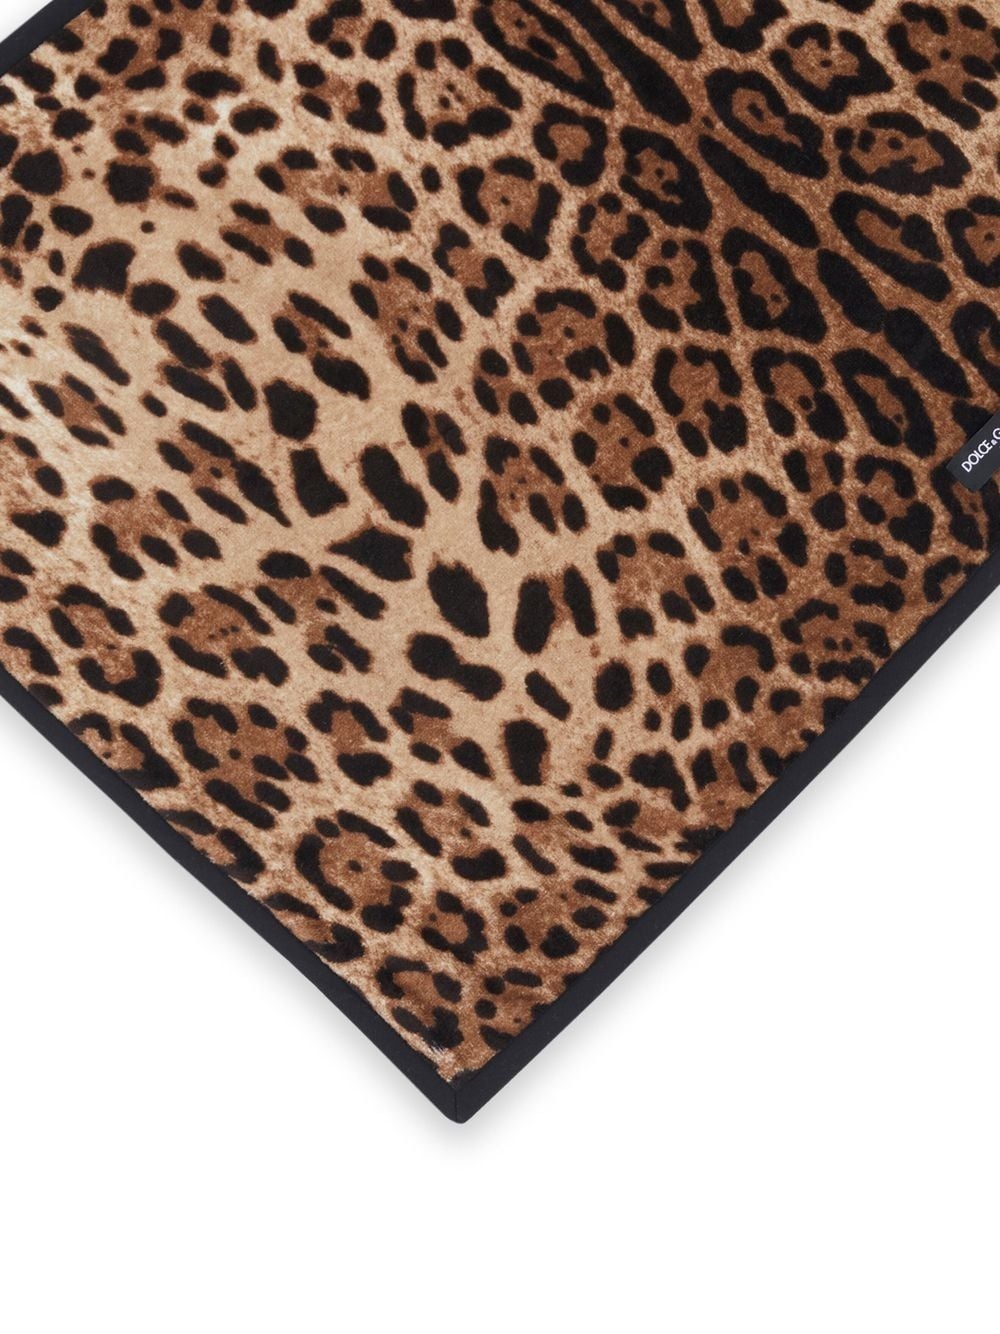 leopard-print cotton bath mat - 2